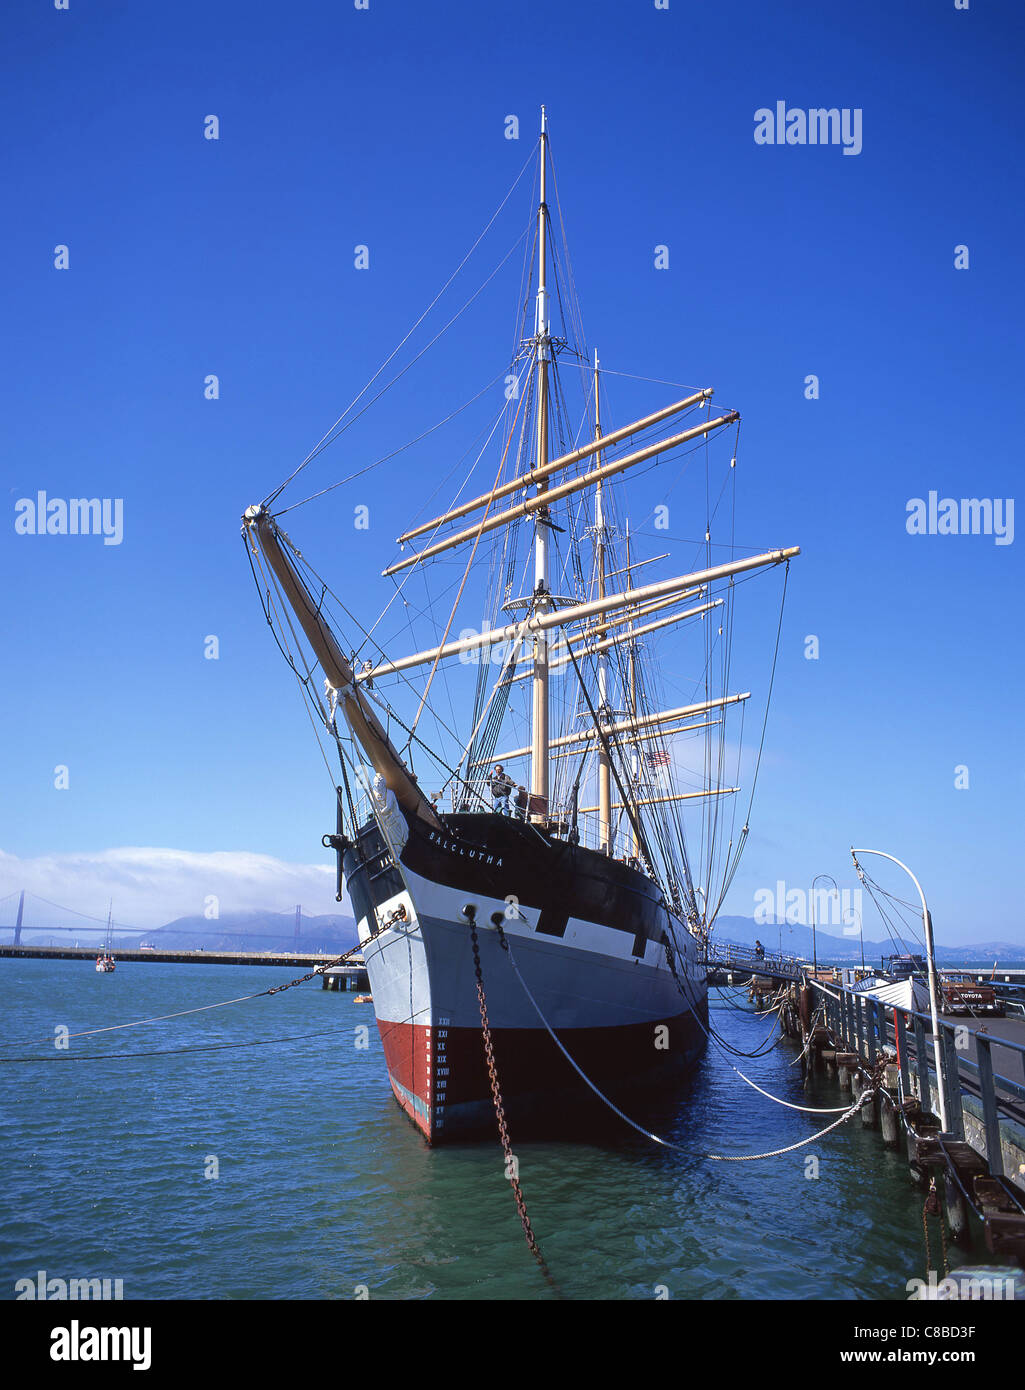 Historischen Balclutha Rig, The San Francisco Maritime National Historical Park, San Francisco, Kalifornien, Vereinigte Staaten von Amerika Stockfoto